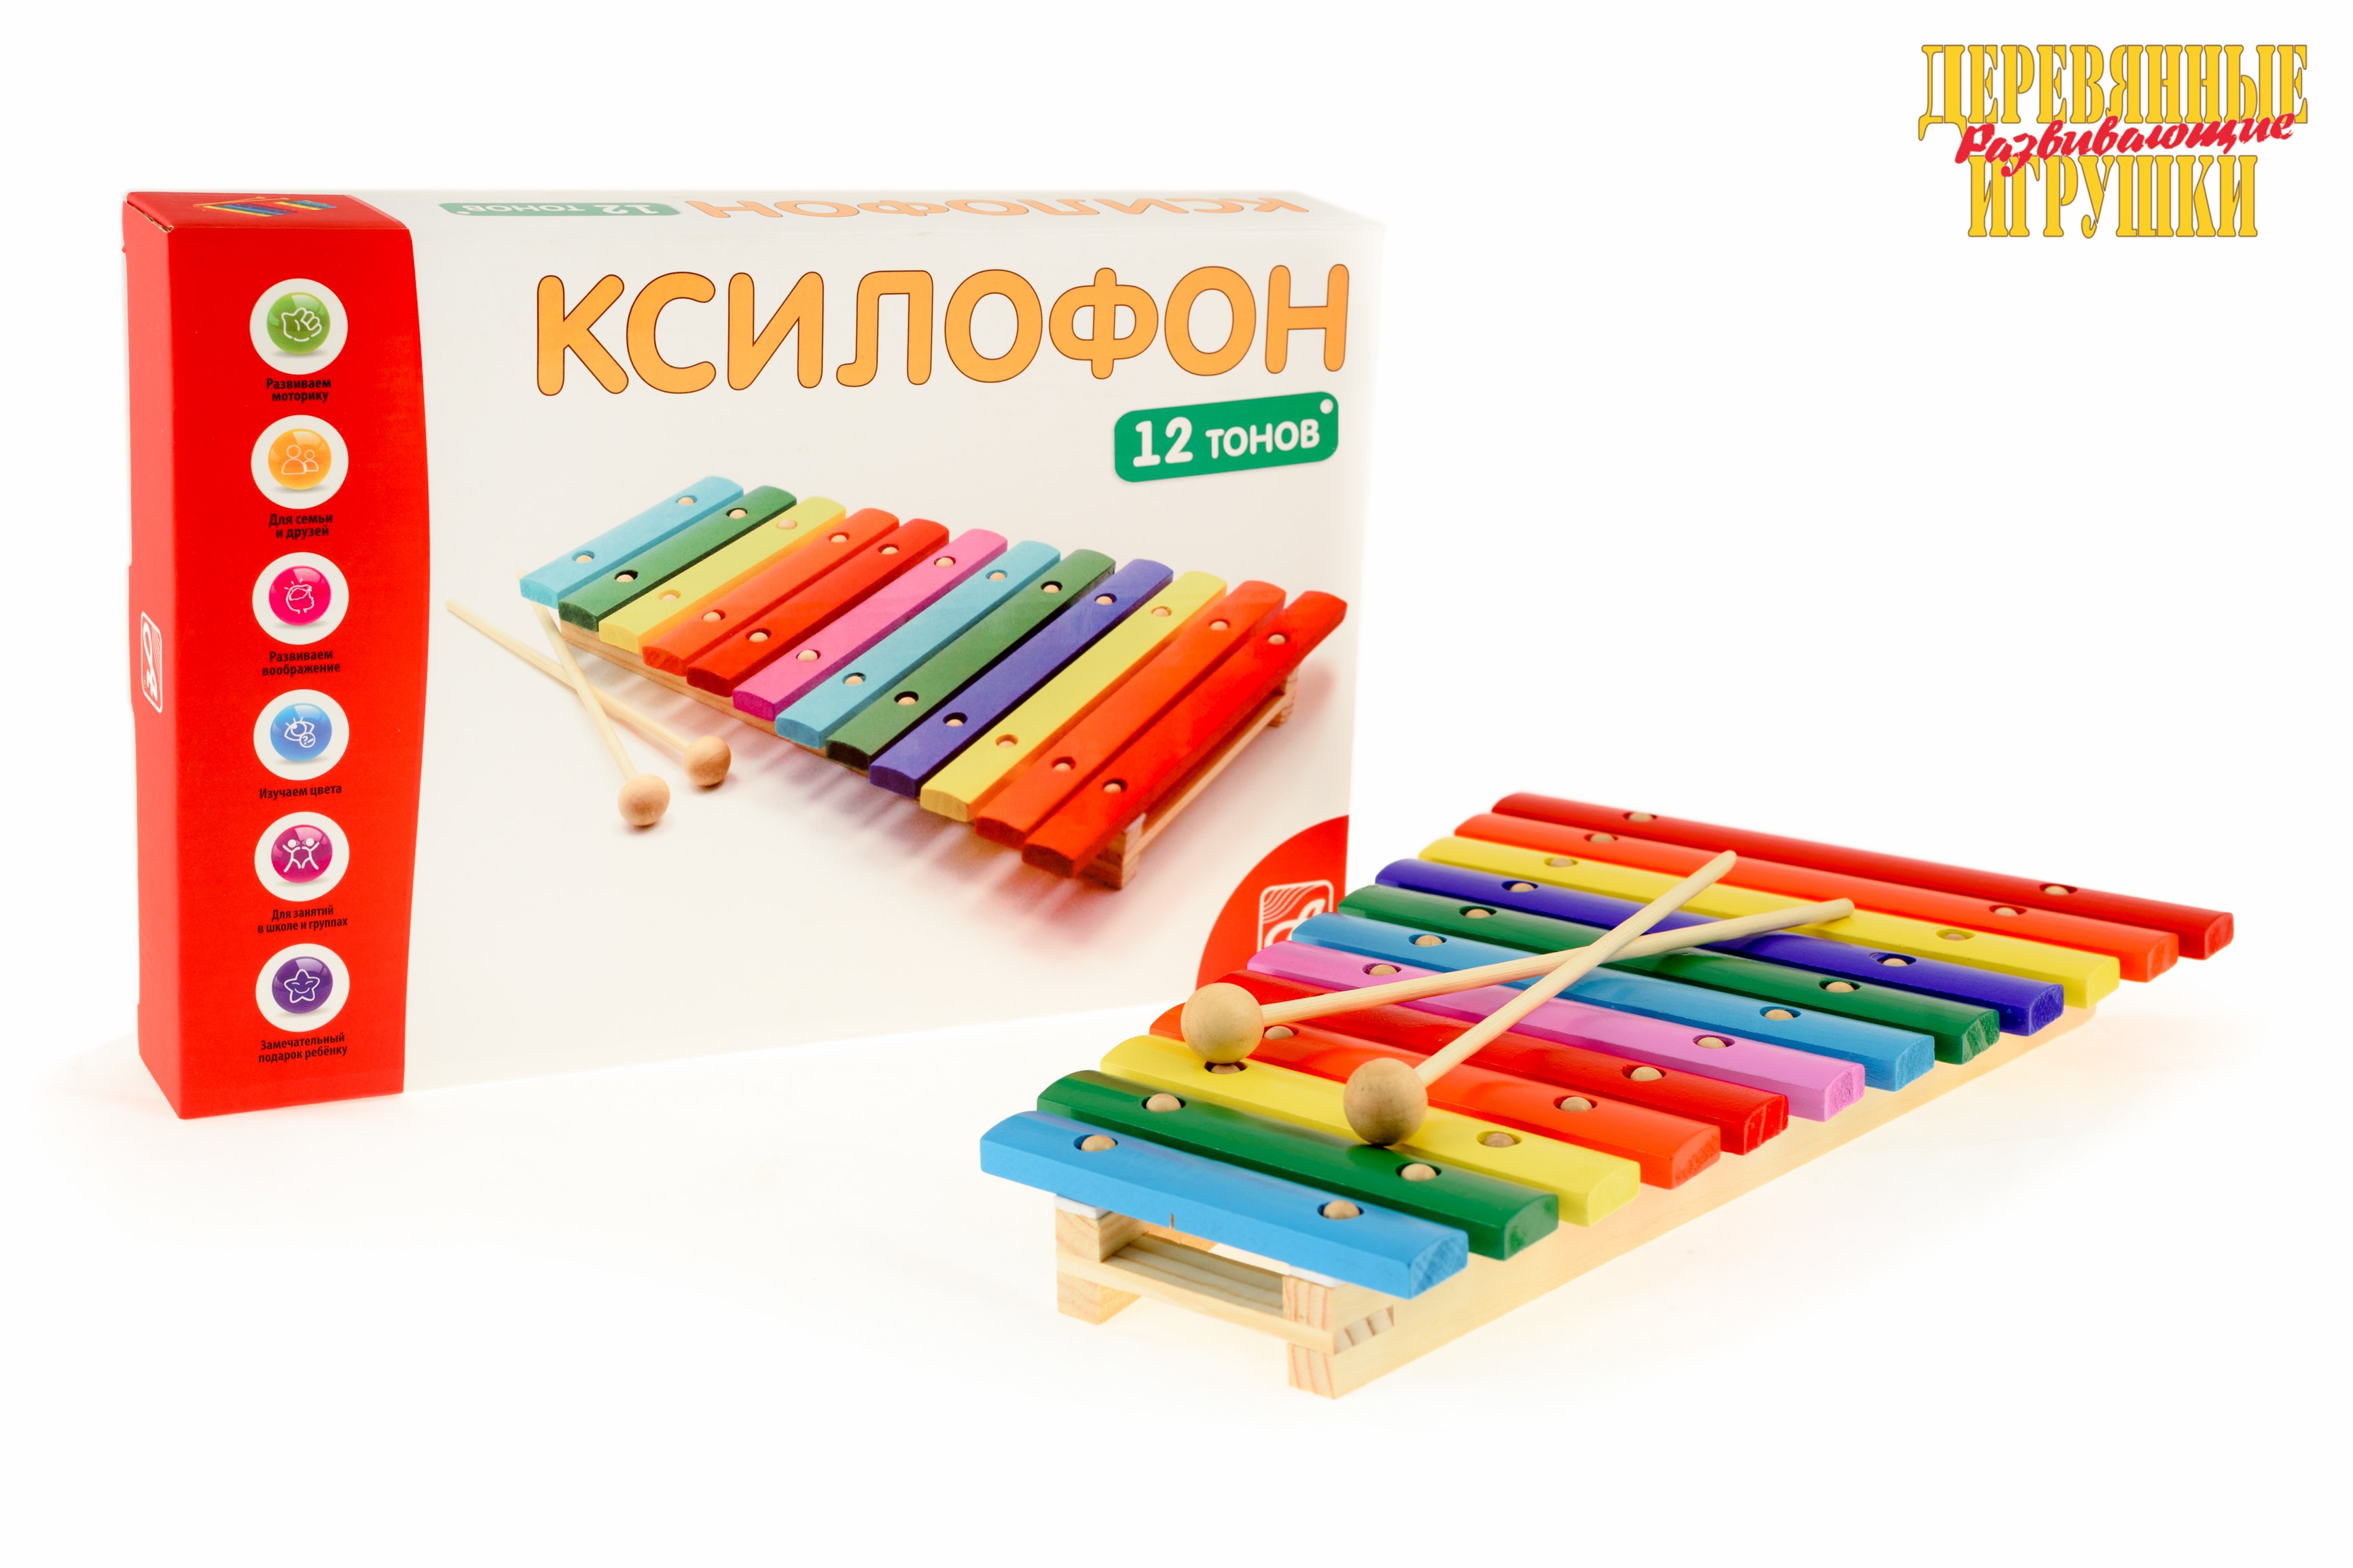 Детский музыкальный инструмент Ксилофон 12 тонов Д230а Анданте